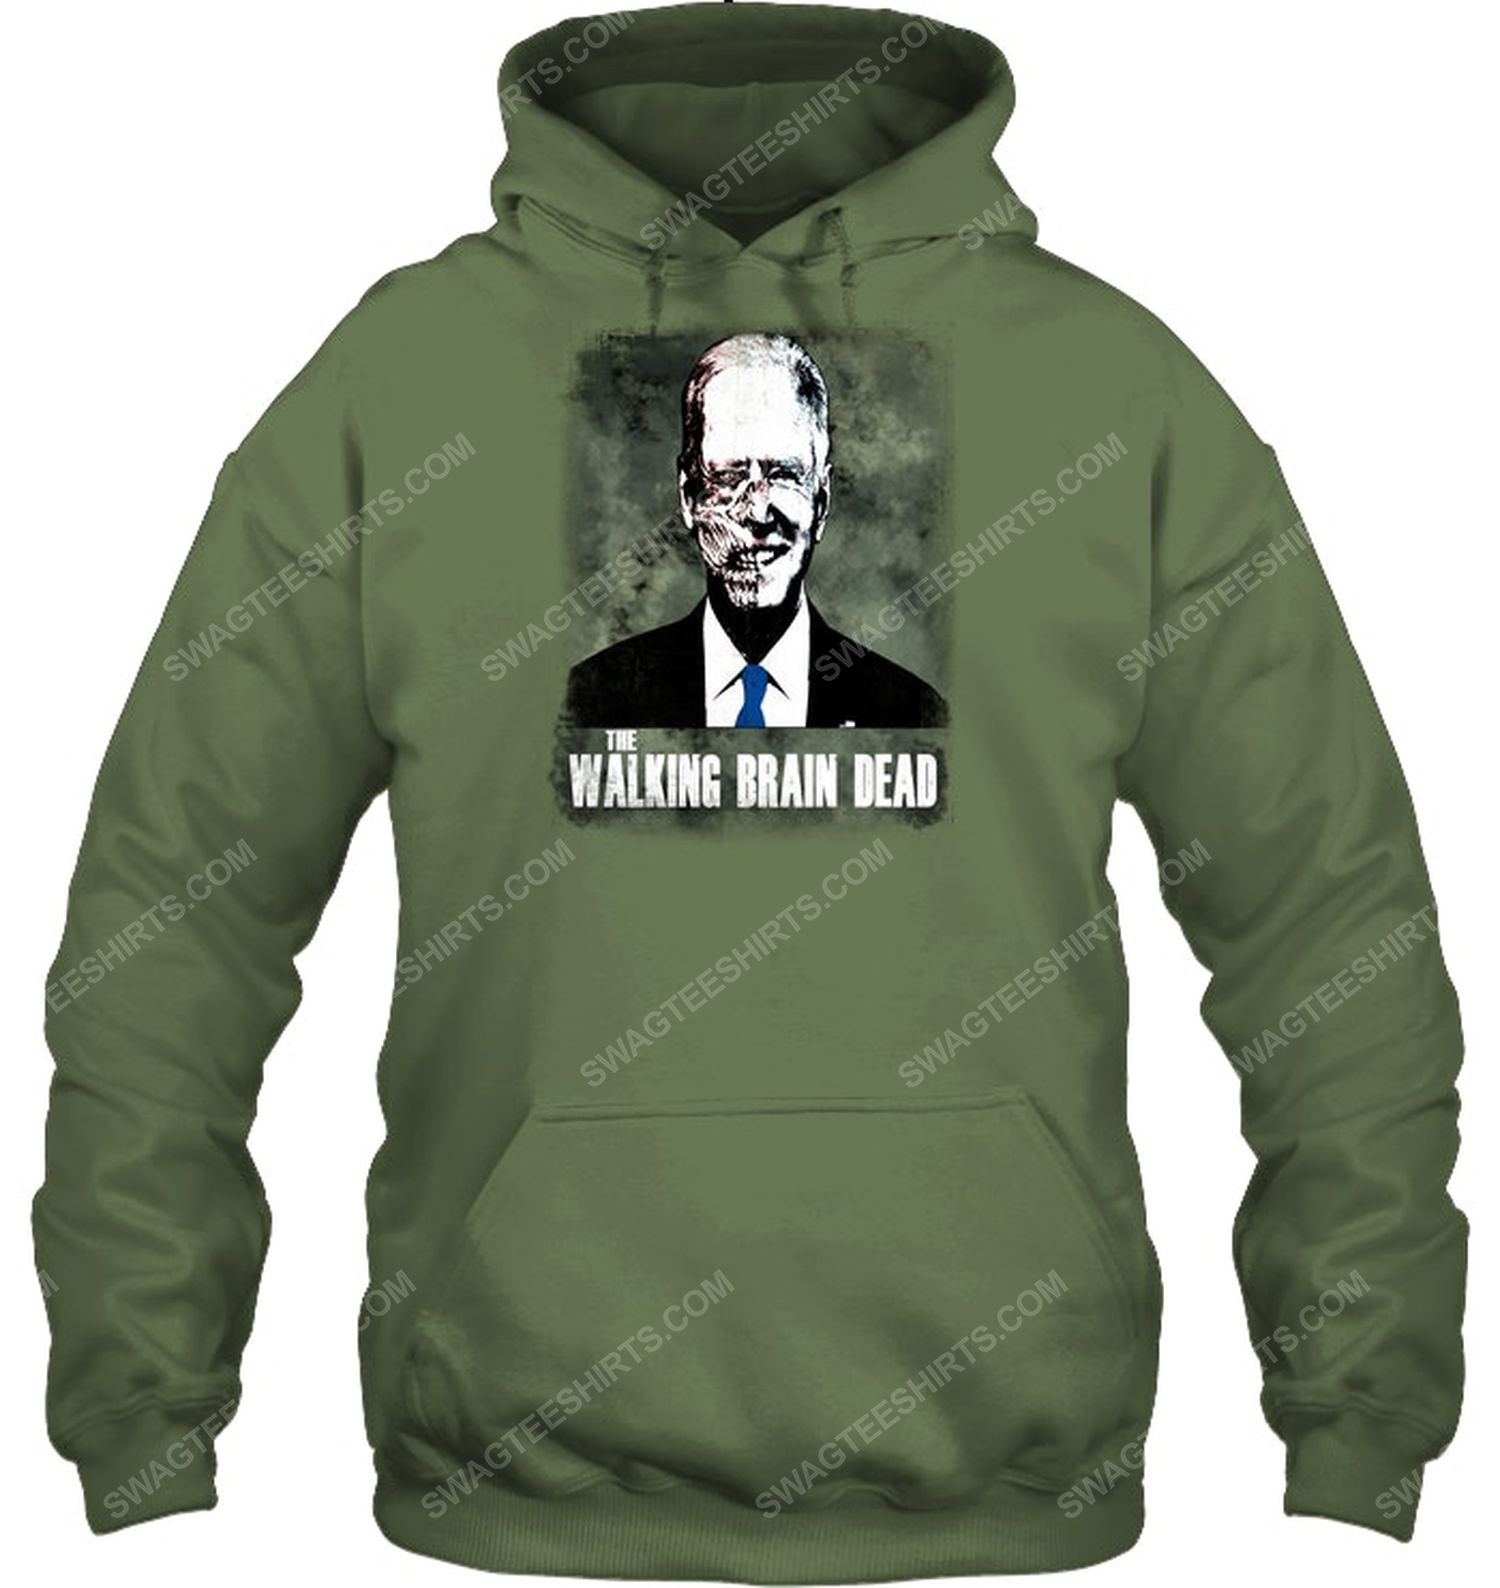 Joe biden the walking brain dead political hoodie